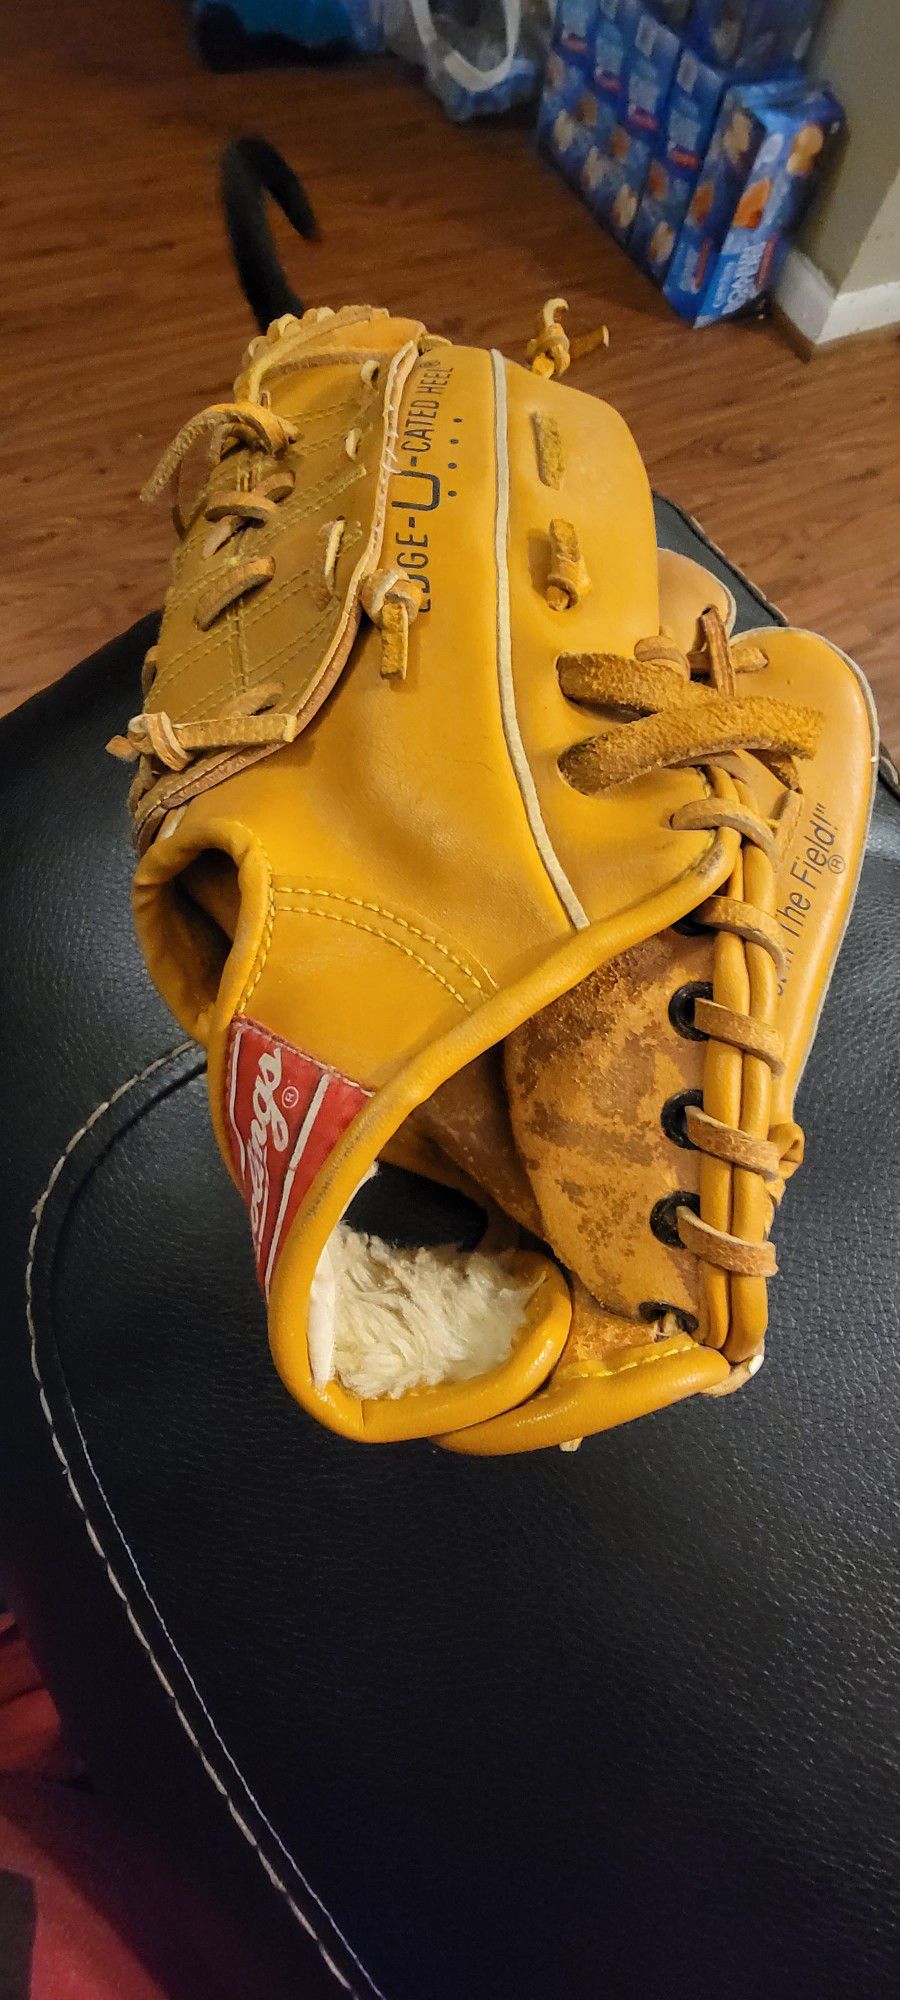 Tony Gwynn Baseball Glove RBG135 Rawlings 